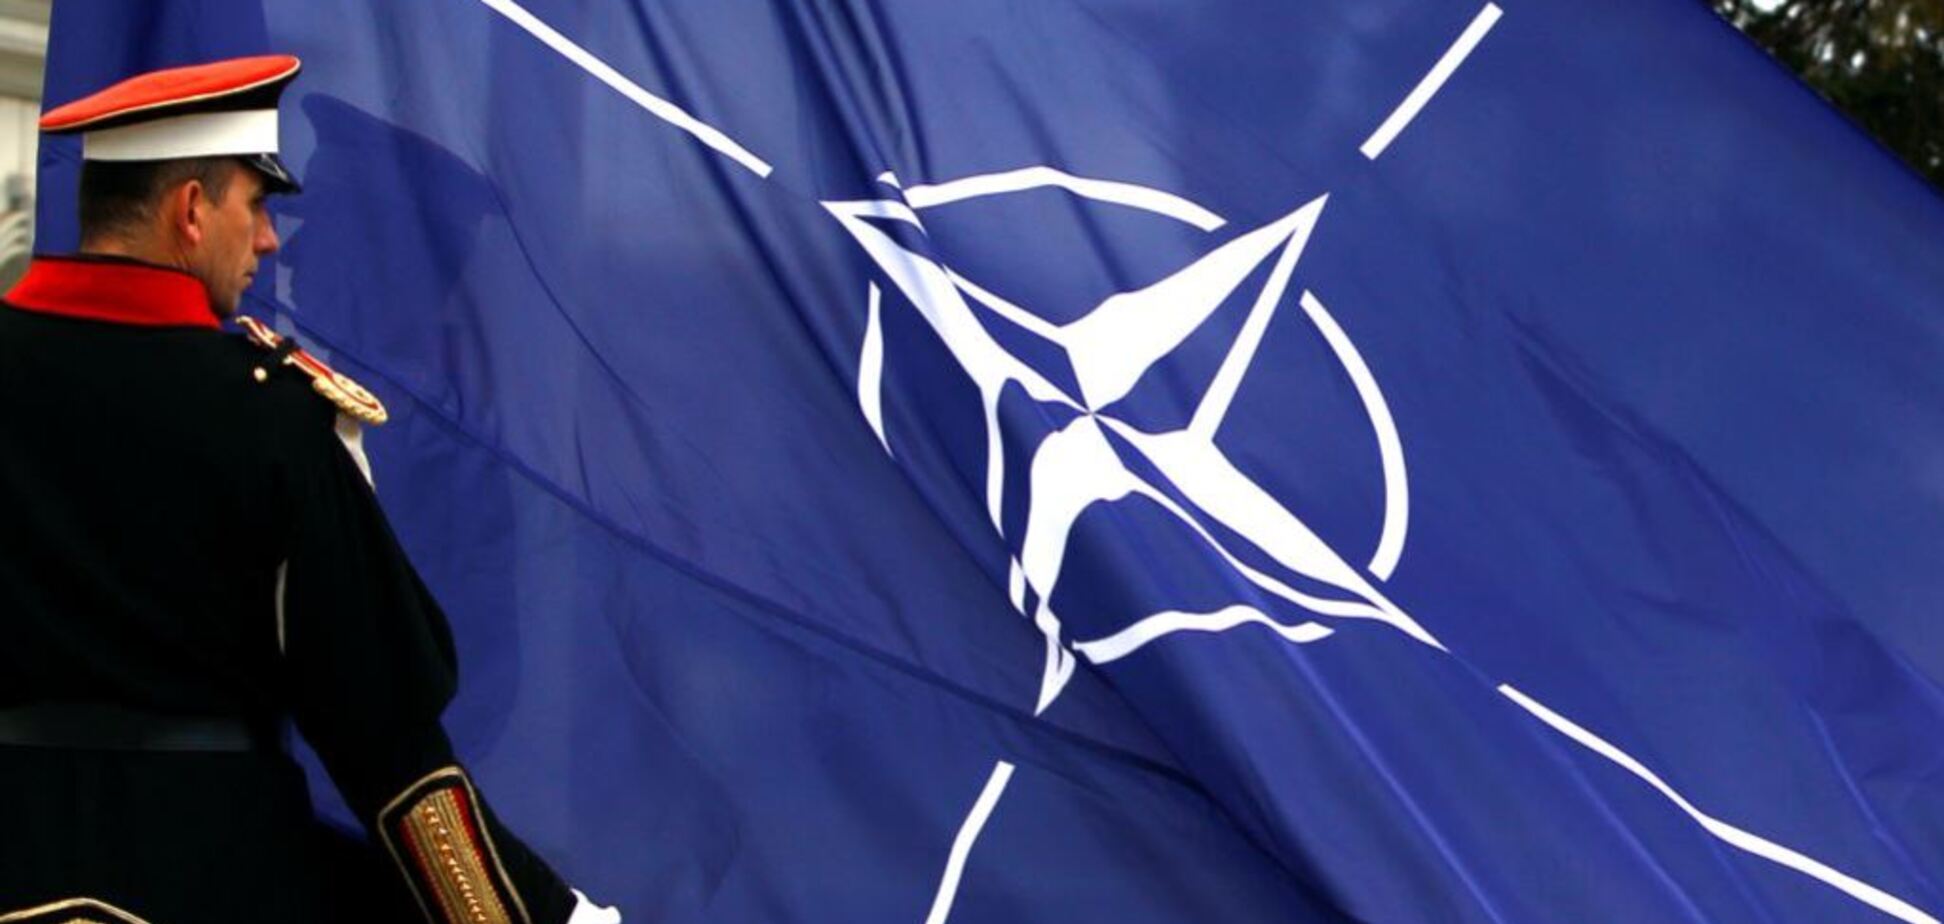 Наздоганяє! У НАТО забили на сполох через Росію